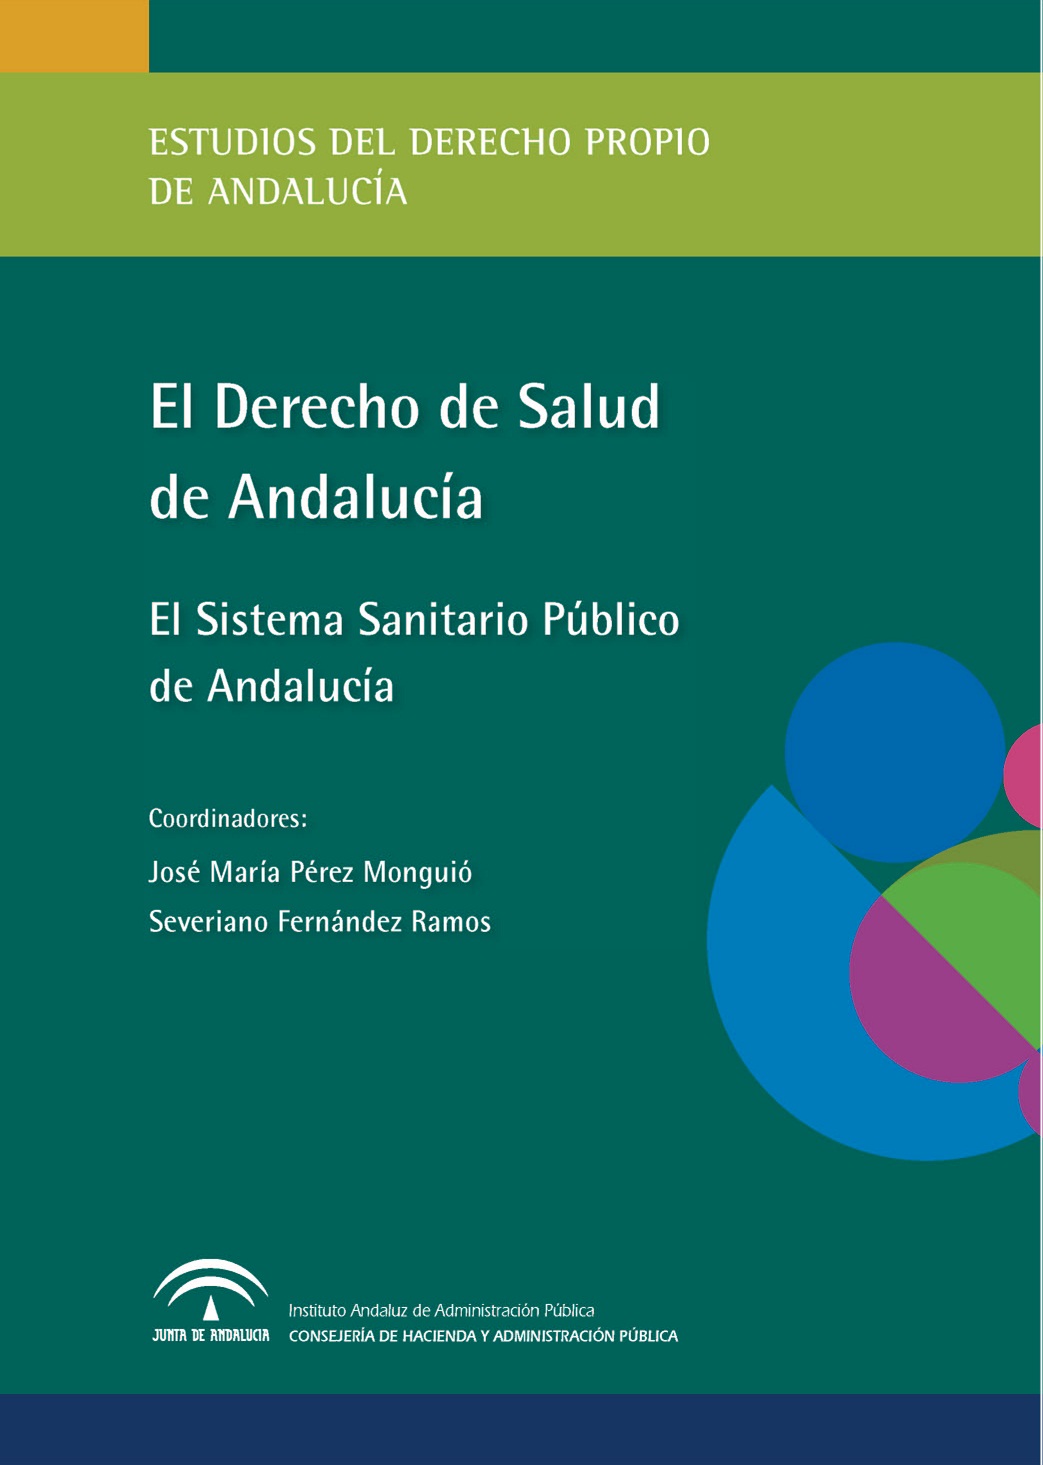 Portada de la publicación "El Derecho de Salud de Andalucía: el Sistema Sanitario Público de Andalucía"